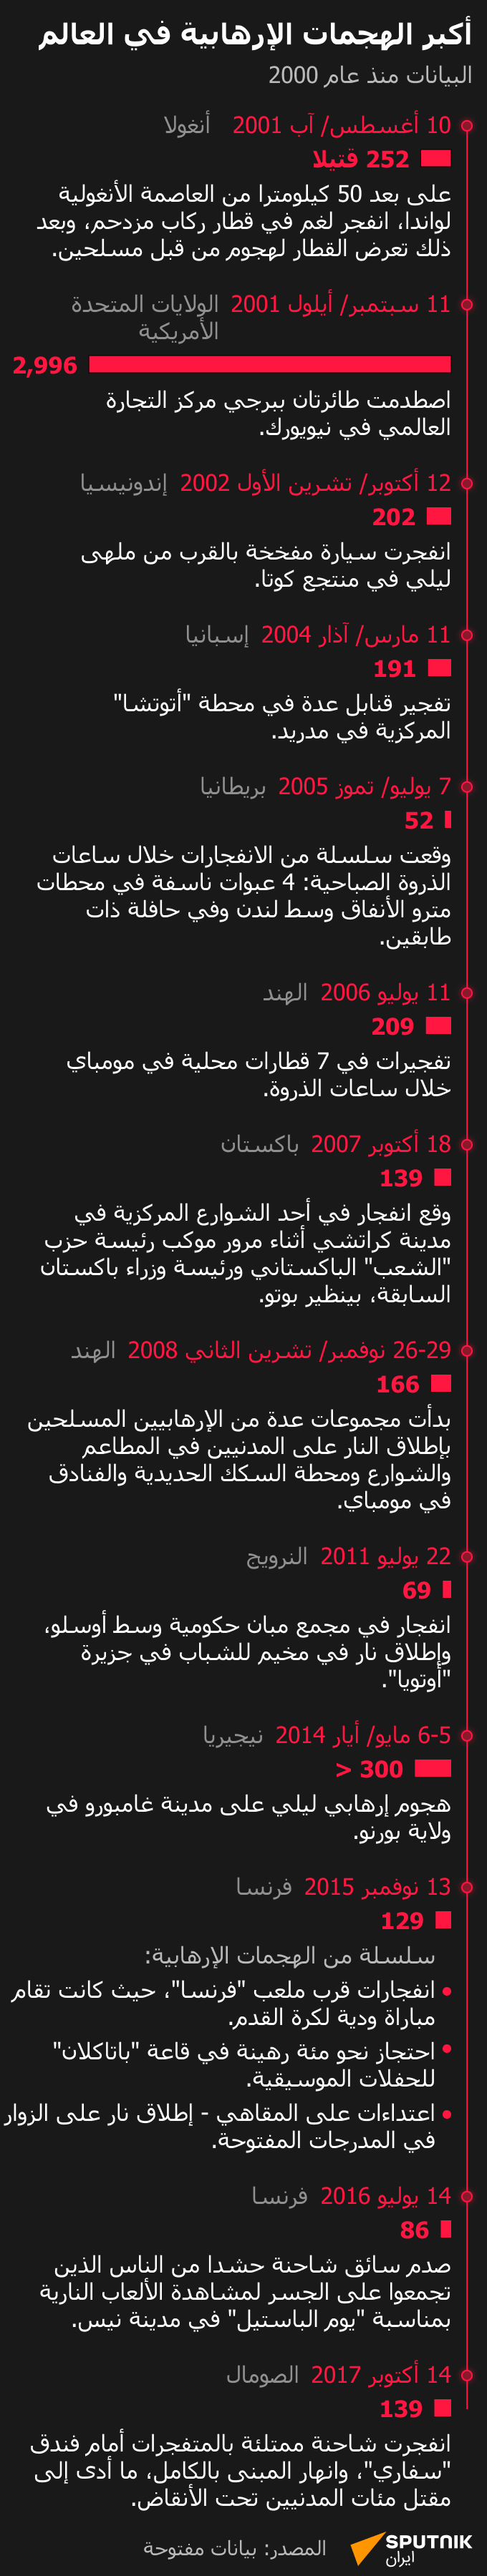 أكبر الهجمات الإرهابية في العالم - سبوتنيك عربي